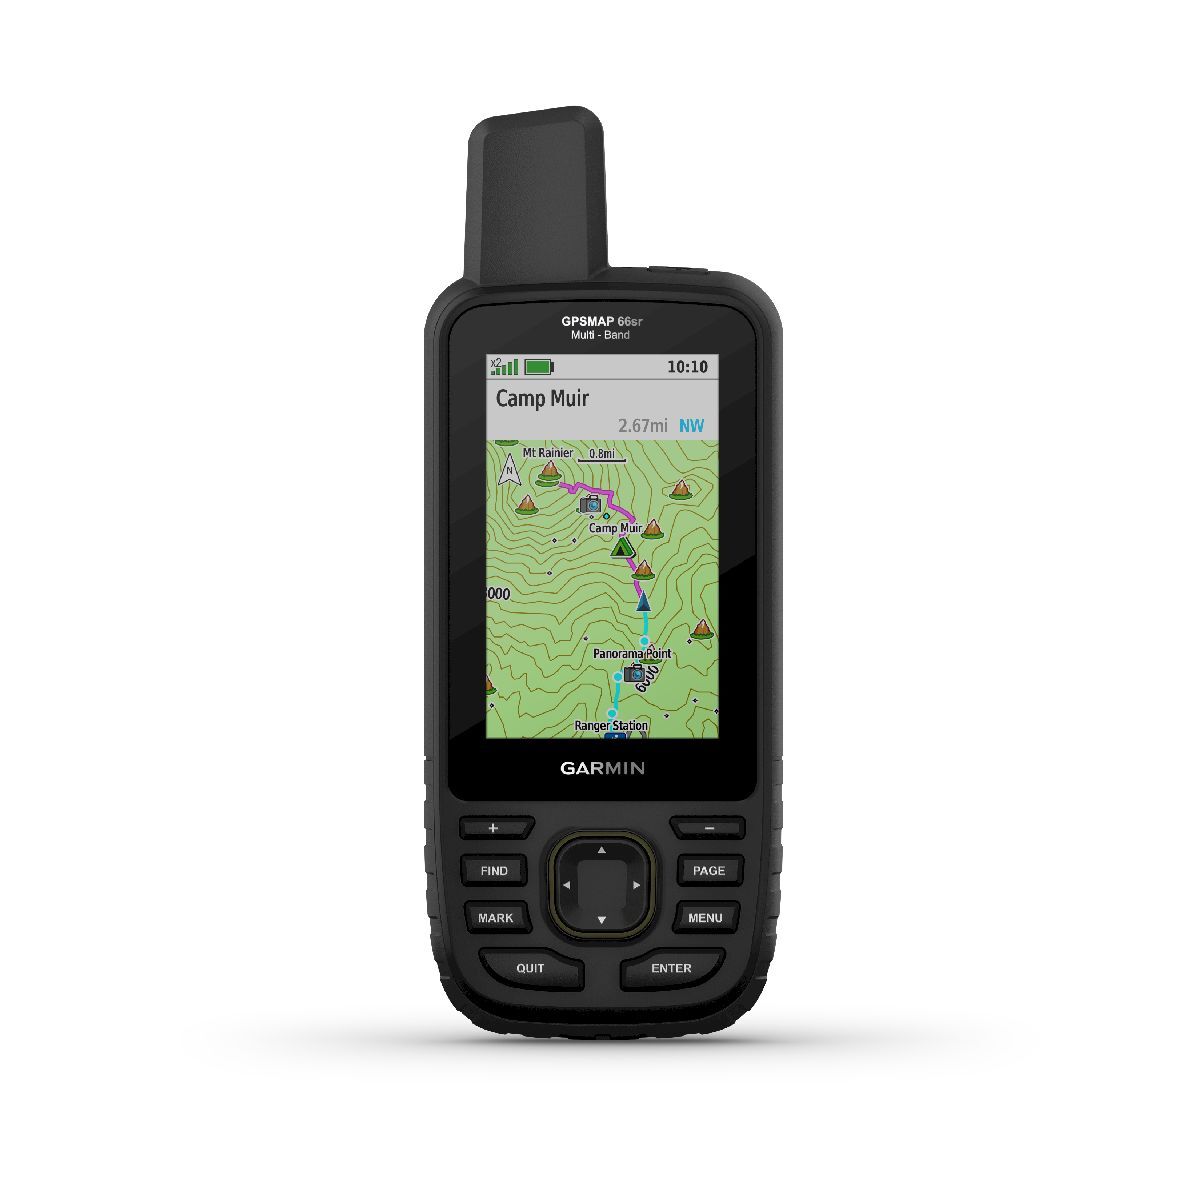 Garmin GPSMAP 66sr - GPS